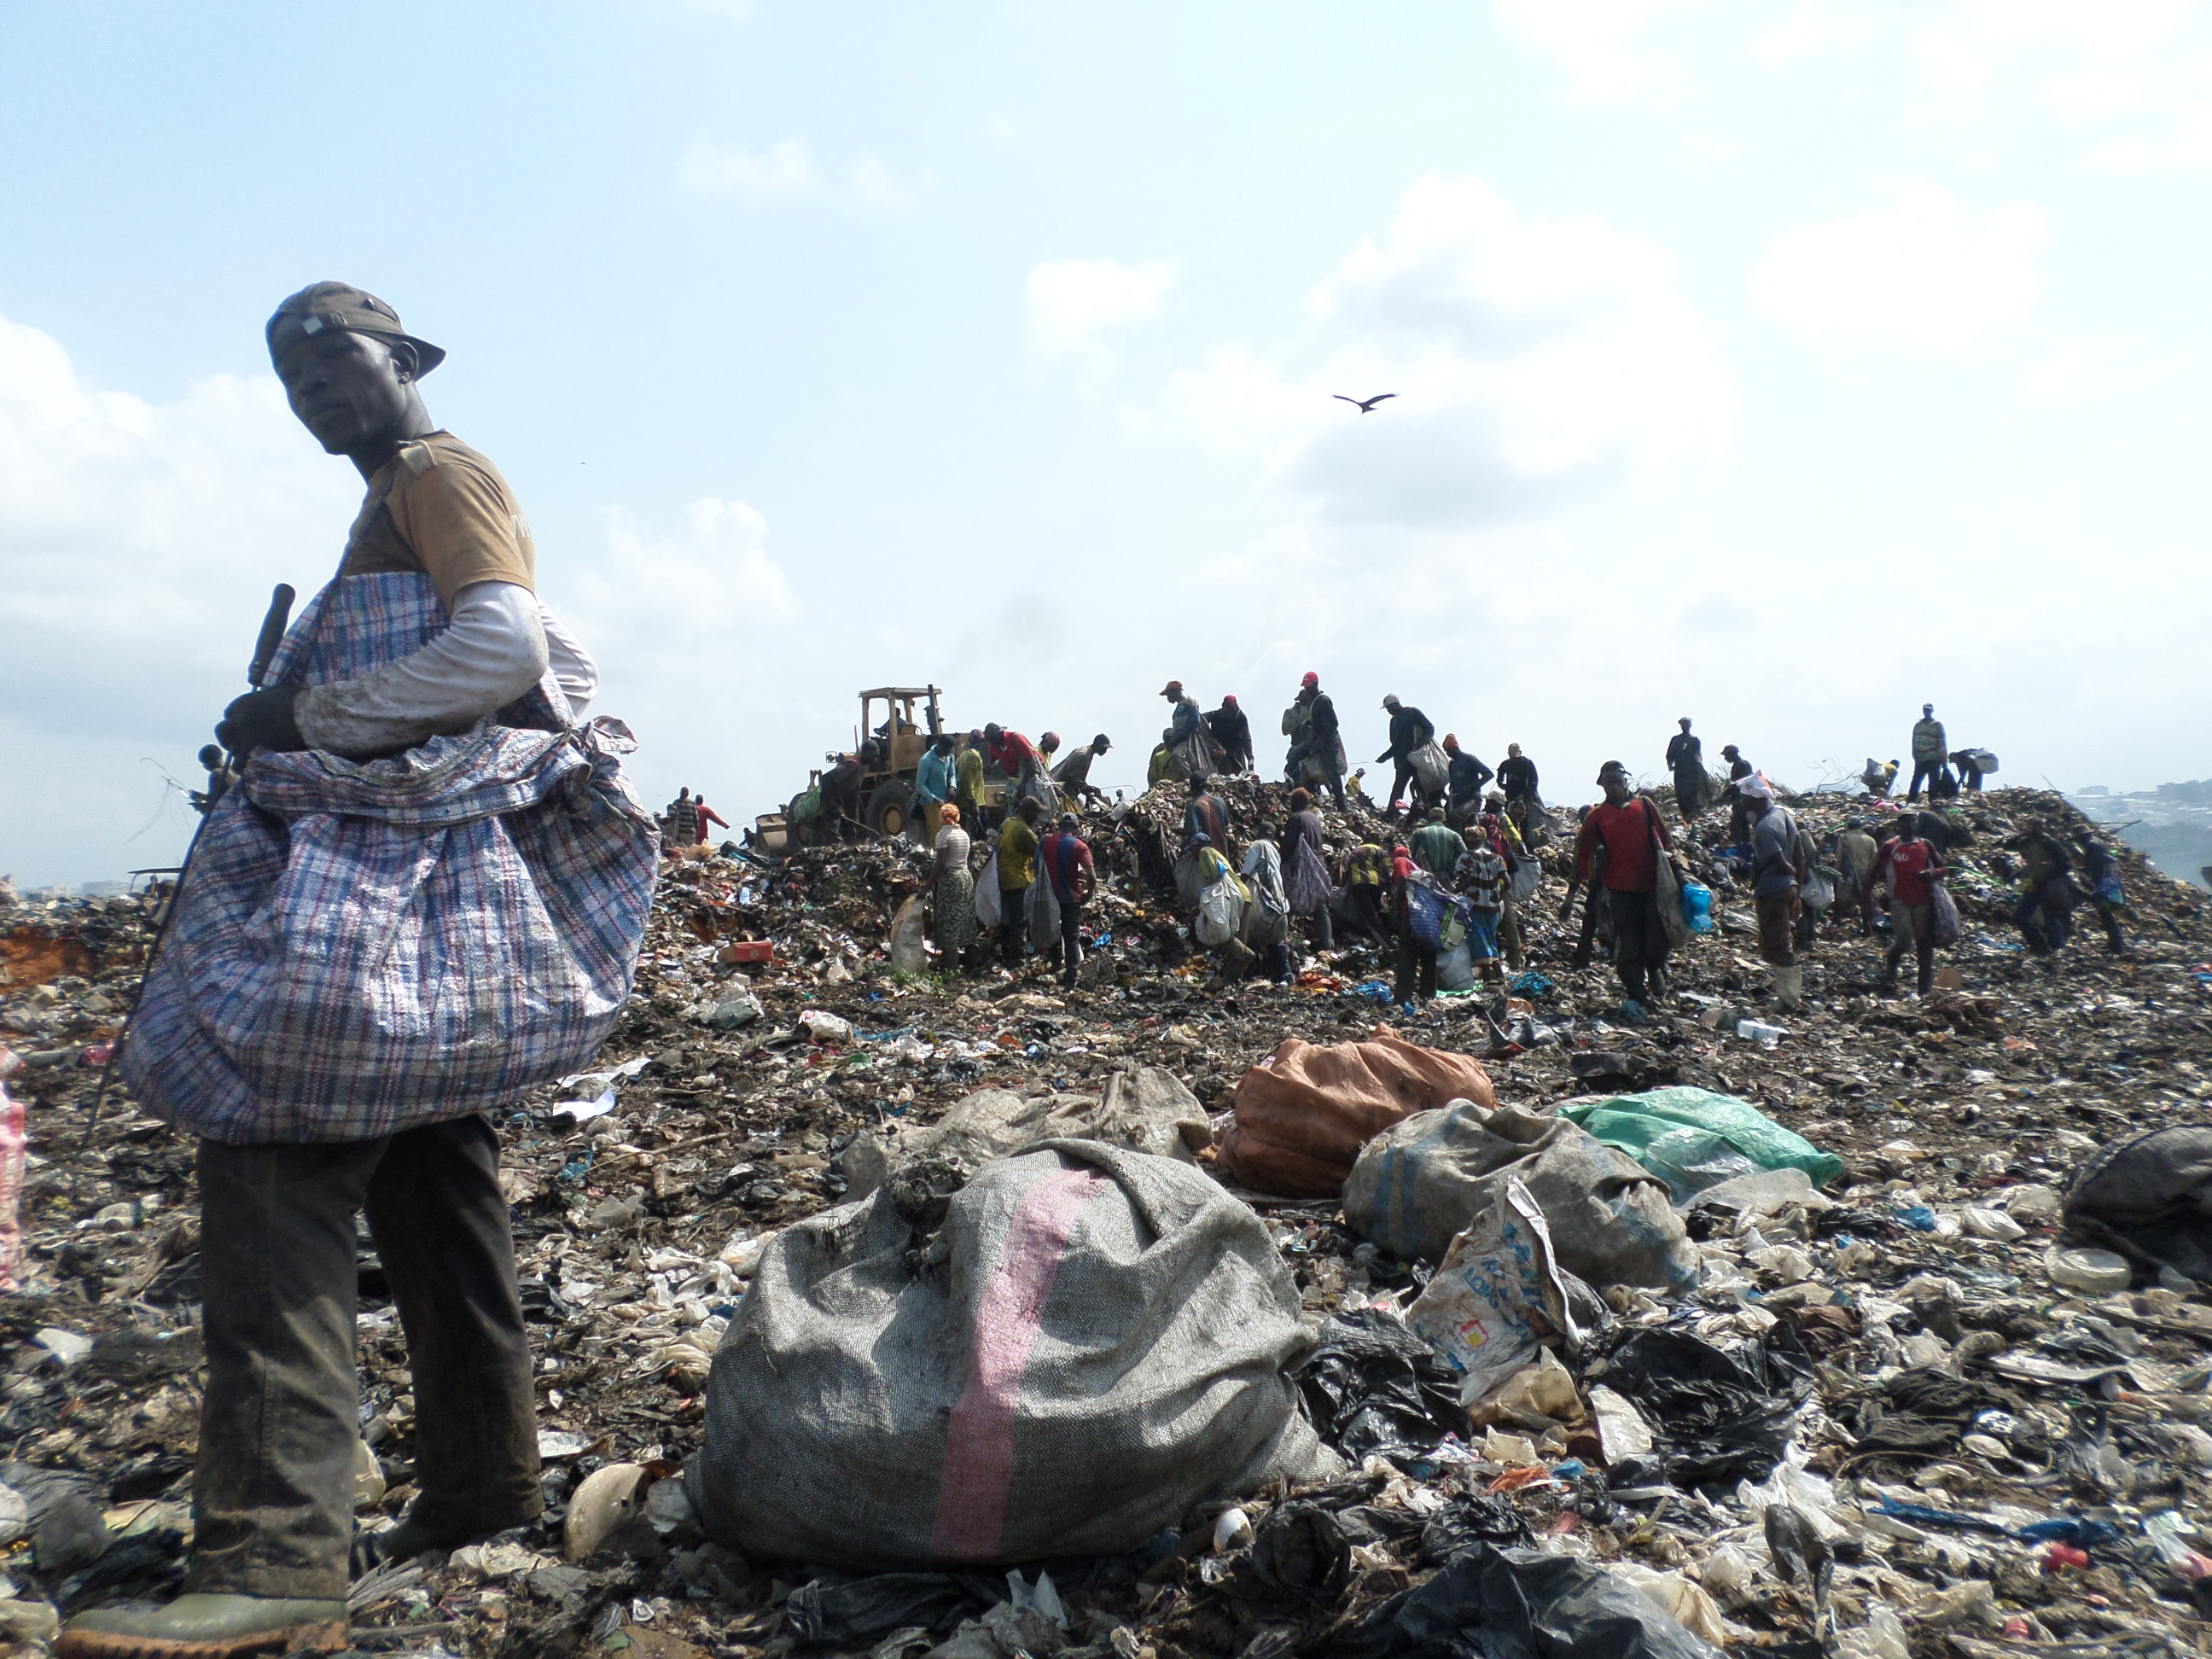 Une start-up introduit le tri des déchets dans les bidonvilles (Vidéo)